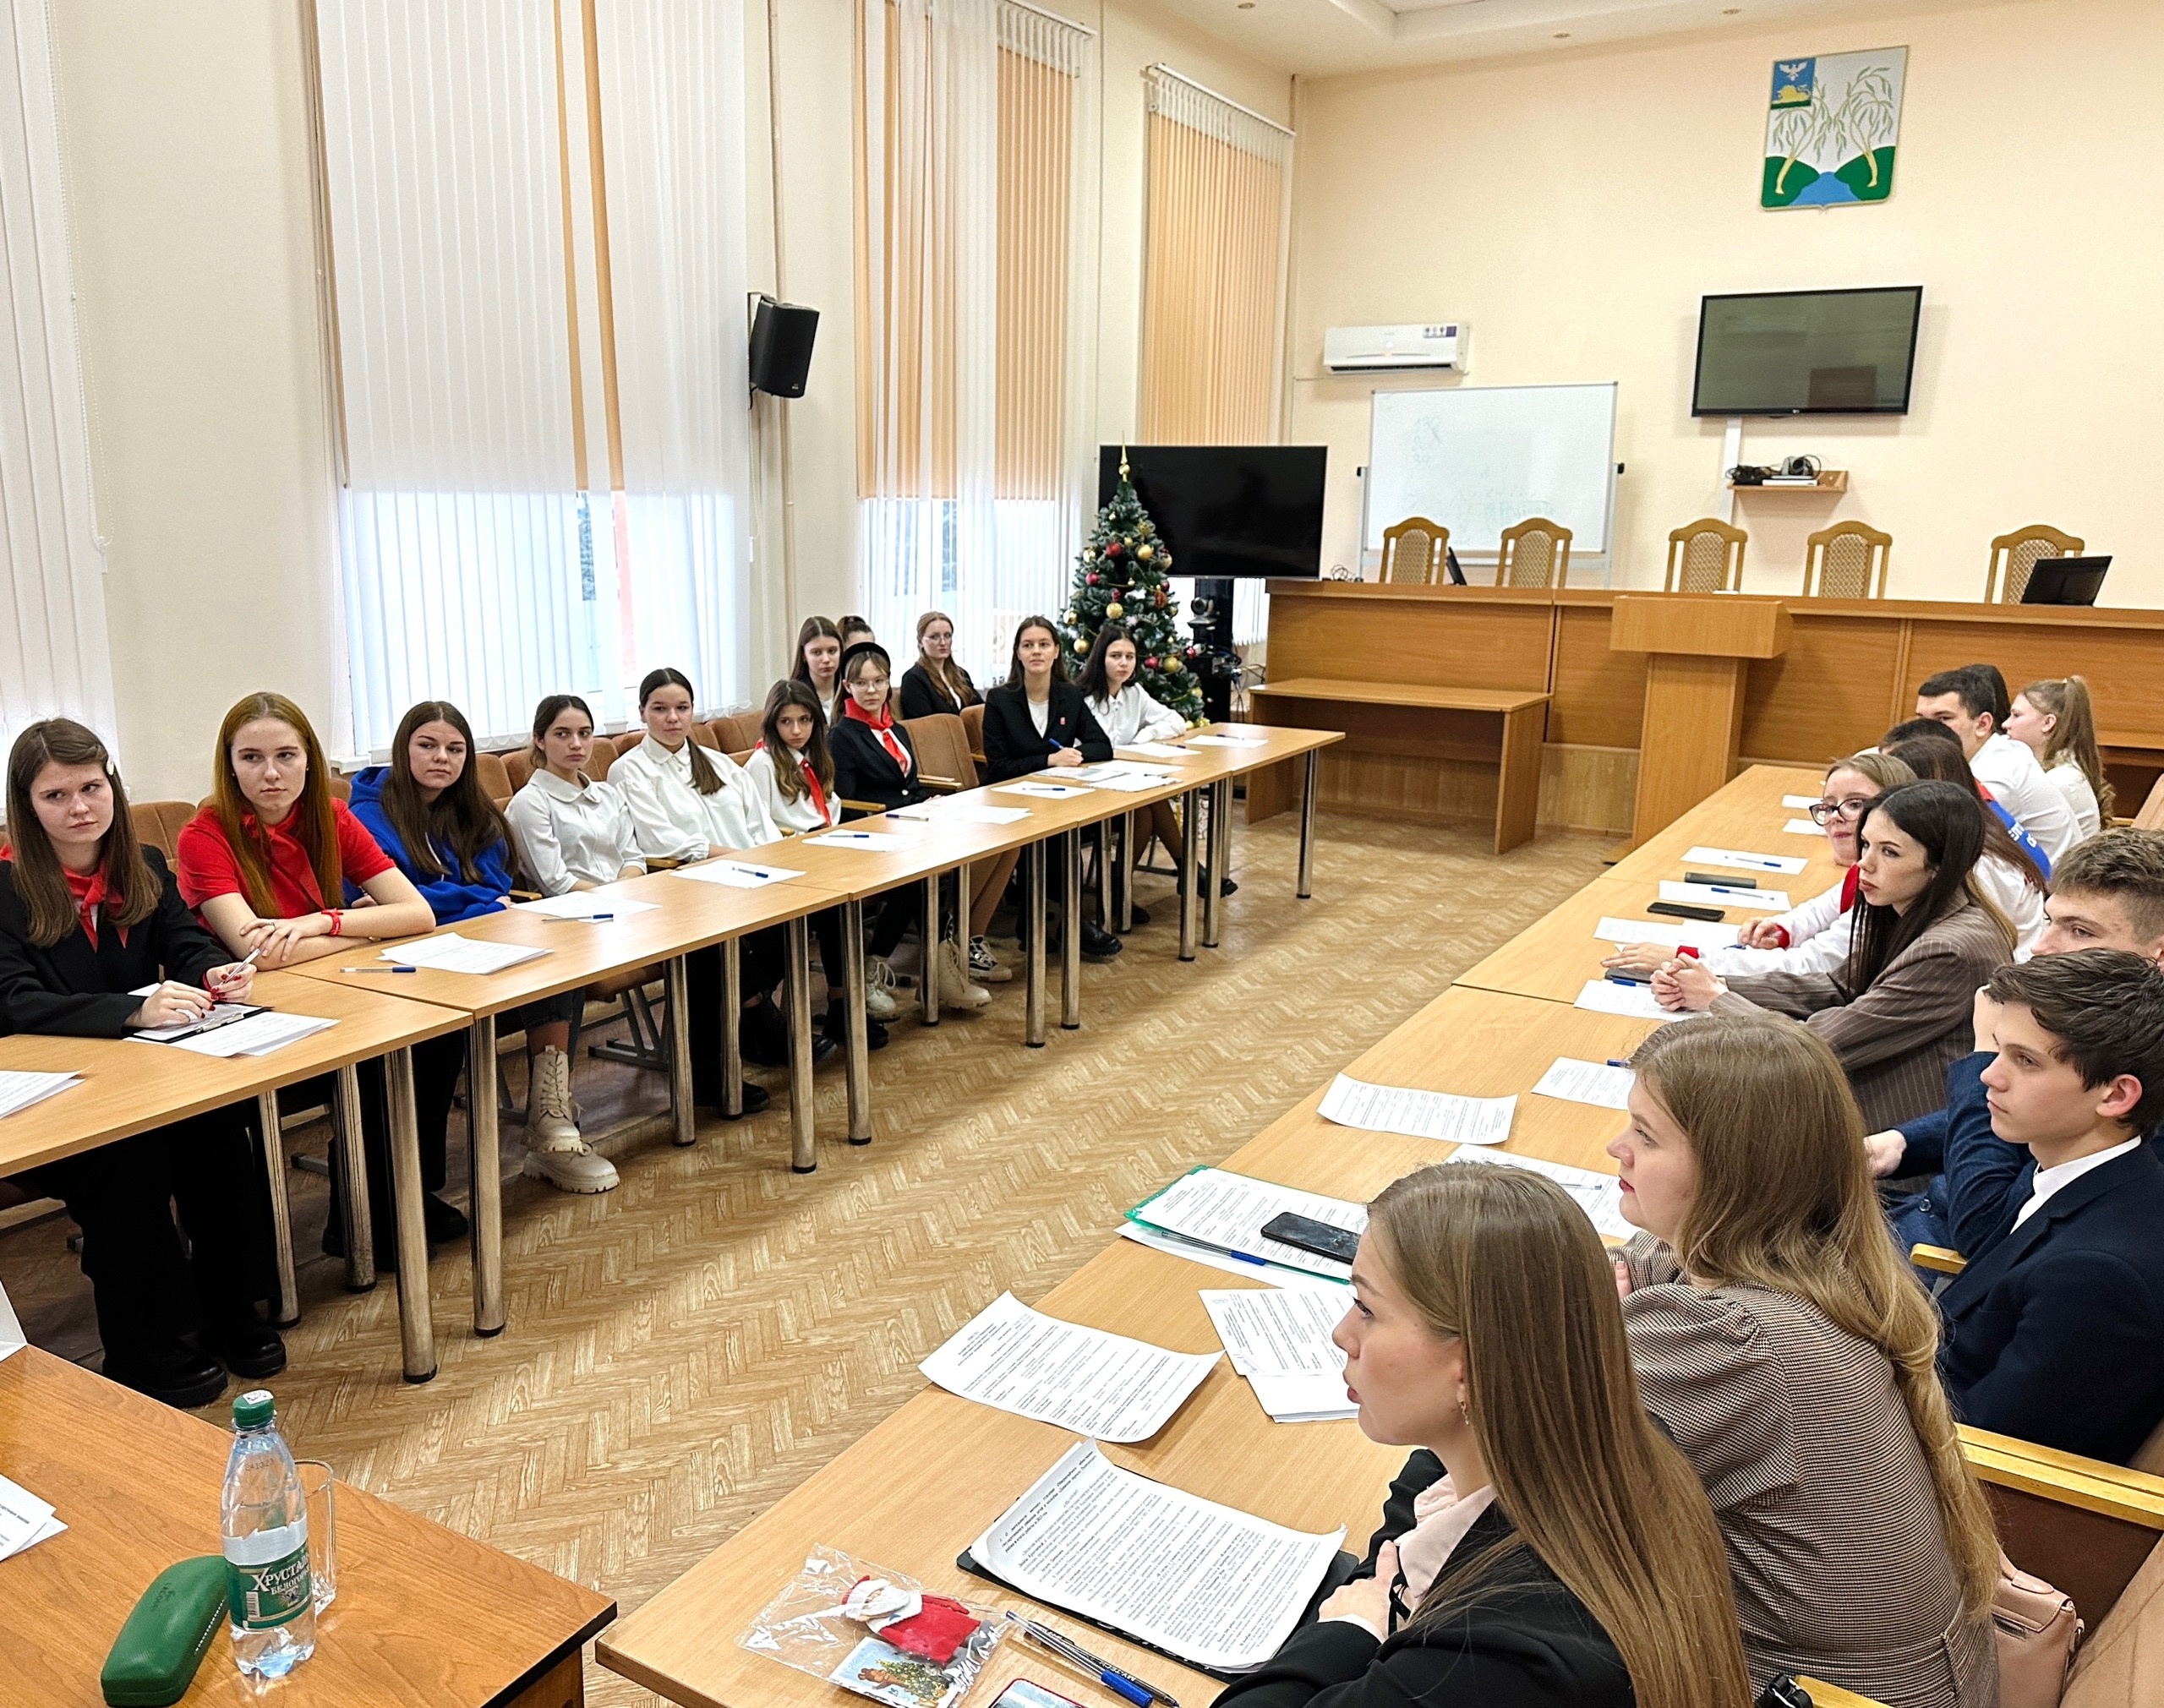 Вчера прошла встреча с  активистами Общероссийского общественно-государственного движения детей и молодёжи «Движение первых» Ракитянского района.